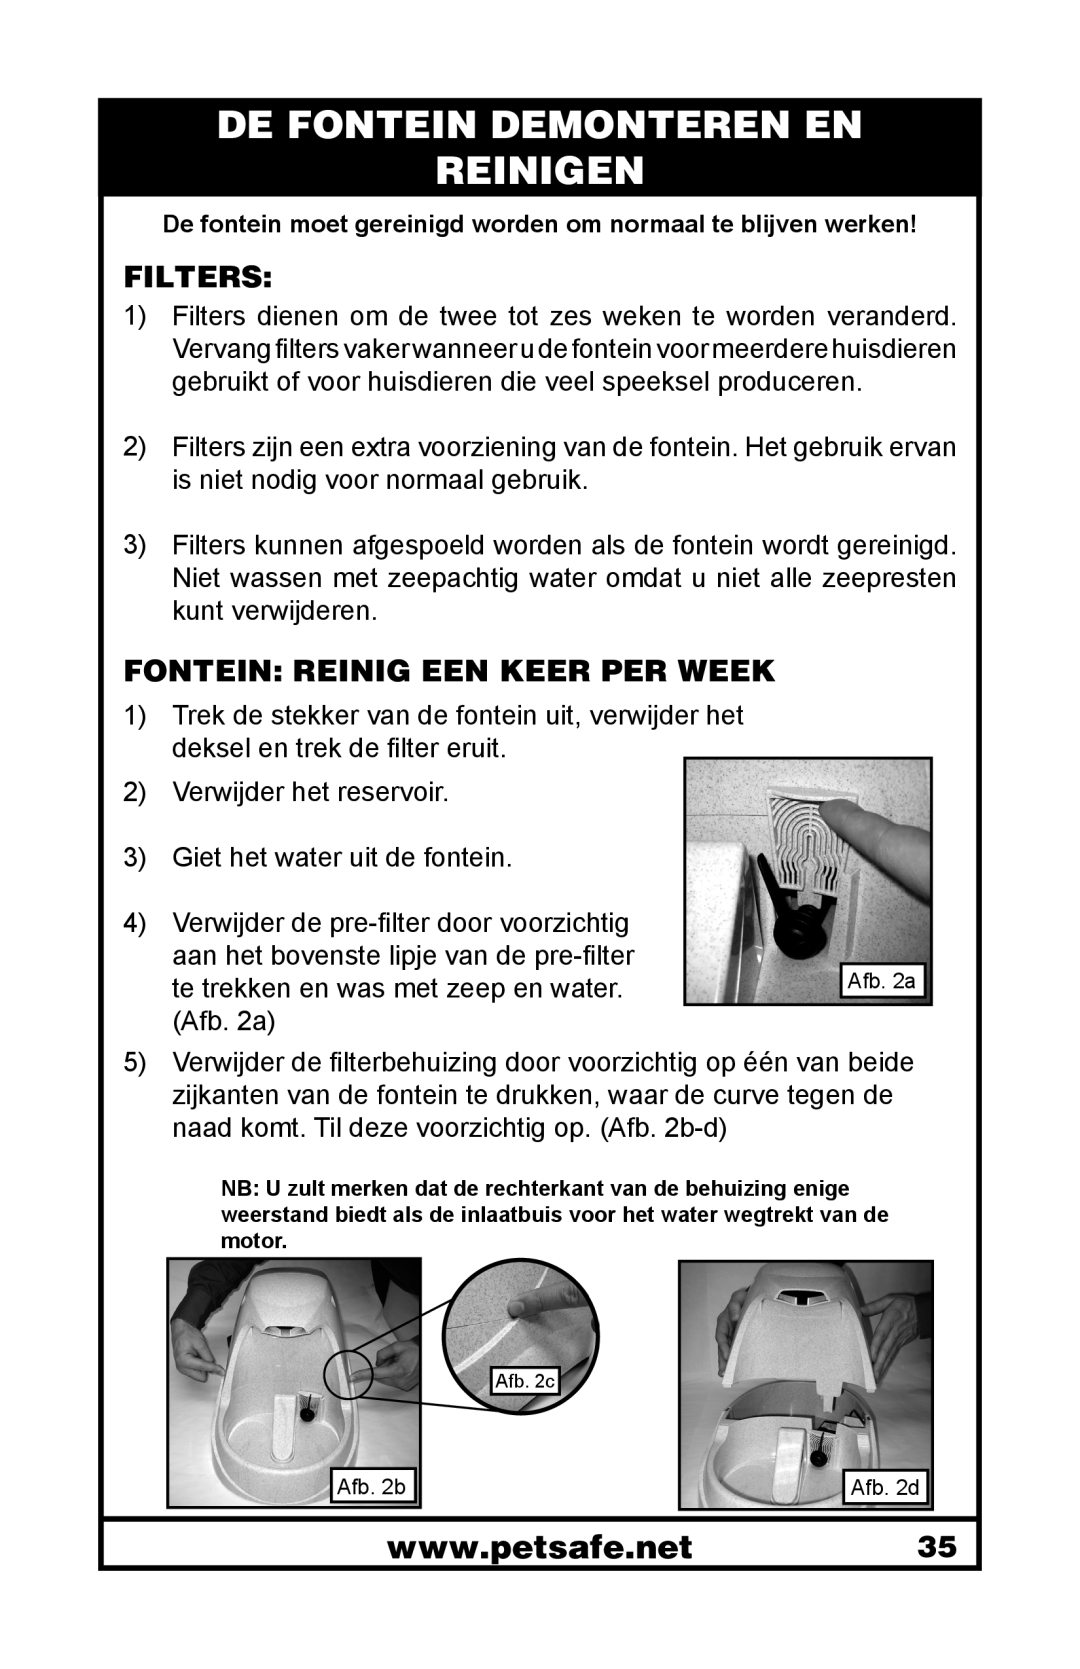 Petsafe 400-1255-19 manuel dutilisation De Fontein Demonteren En Reinigen, Filters, Fontein Reinig Een Keer Per Week 